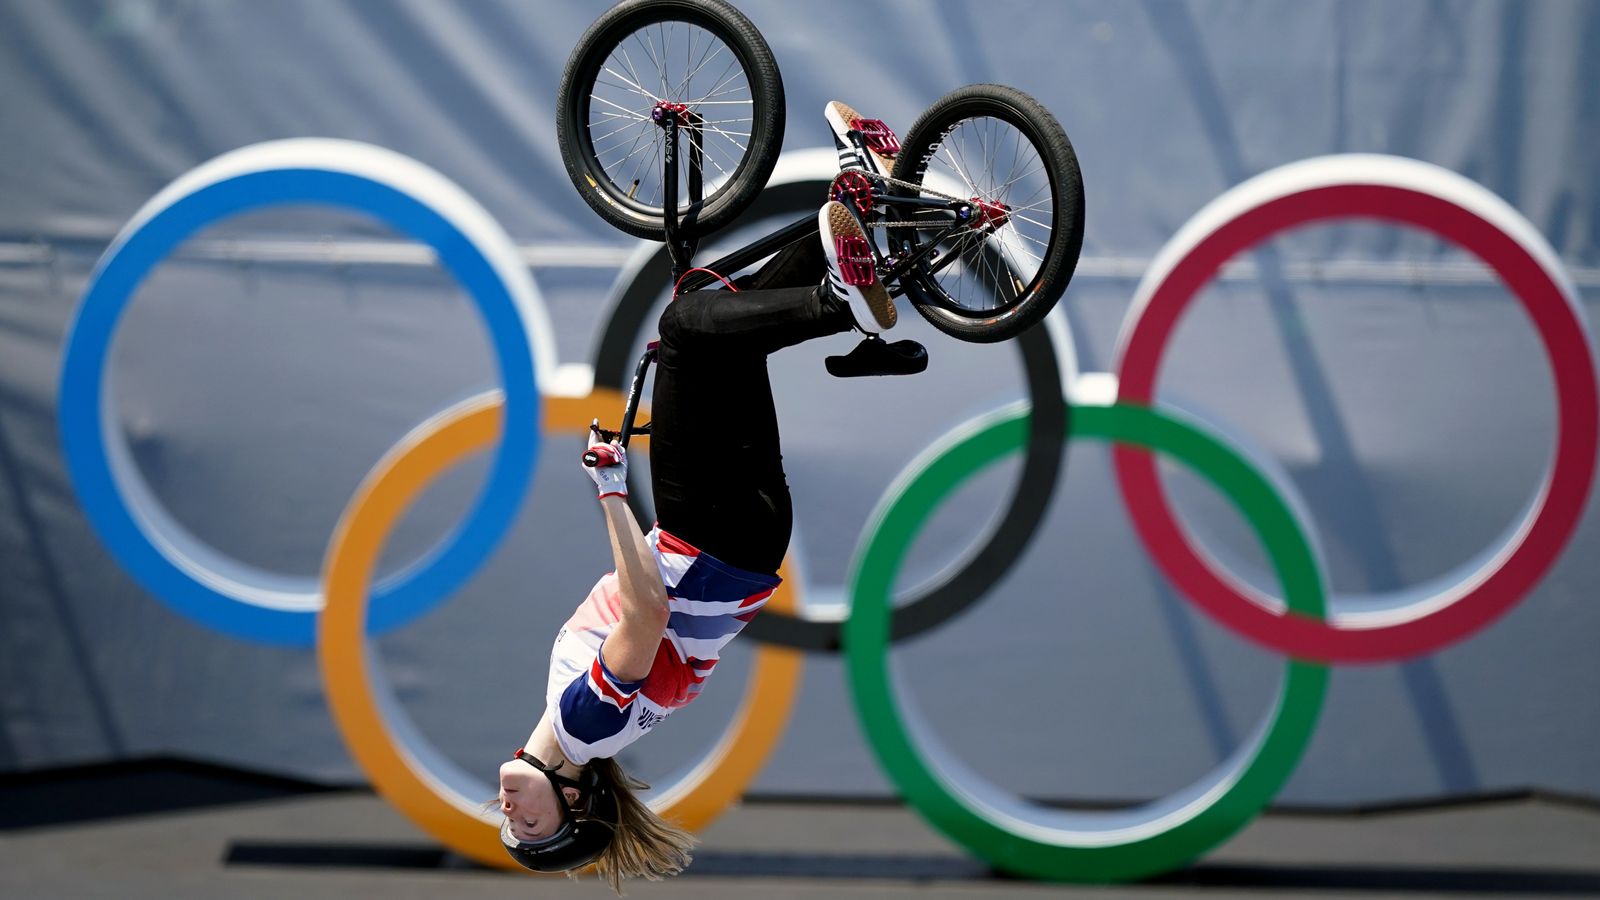 Olimpiadi di Tokyo: la britannica Charlotte Worthington vince l’oro nella BMX freestyle dopo aver realizzato un emozionante salto mortale all’indietro a 360° |  notizie dal mondo